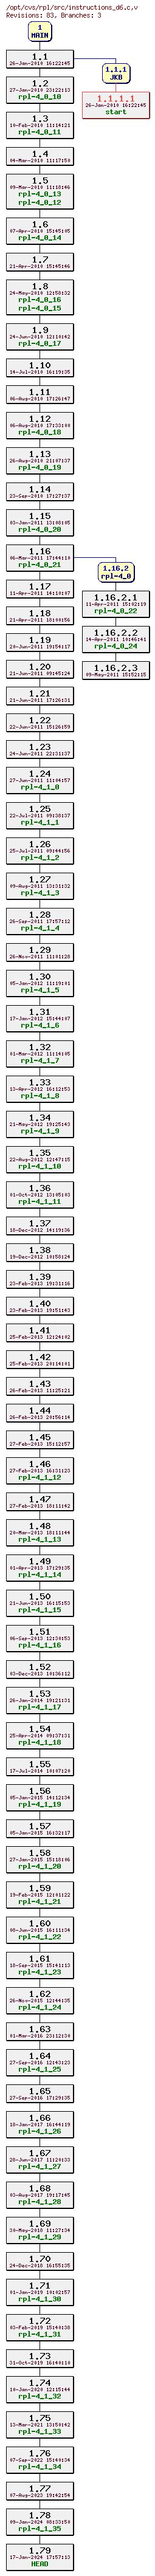 Revision graph of rpl/src/instructions_d6.c